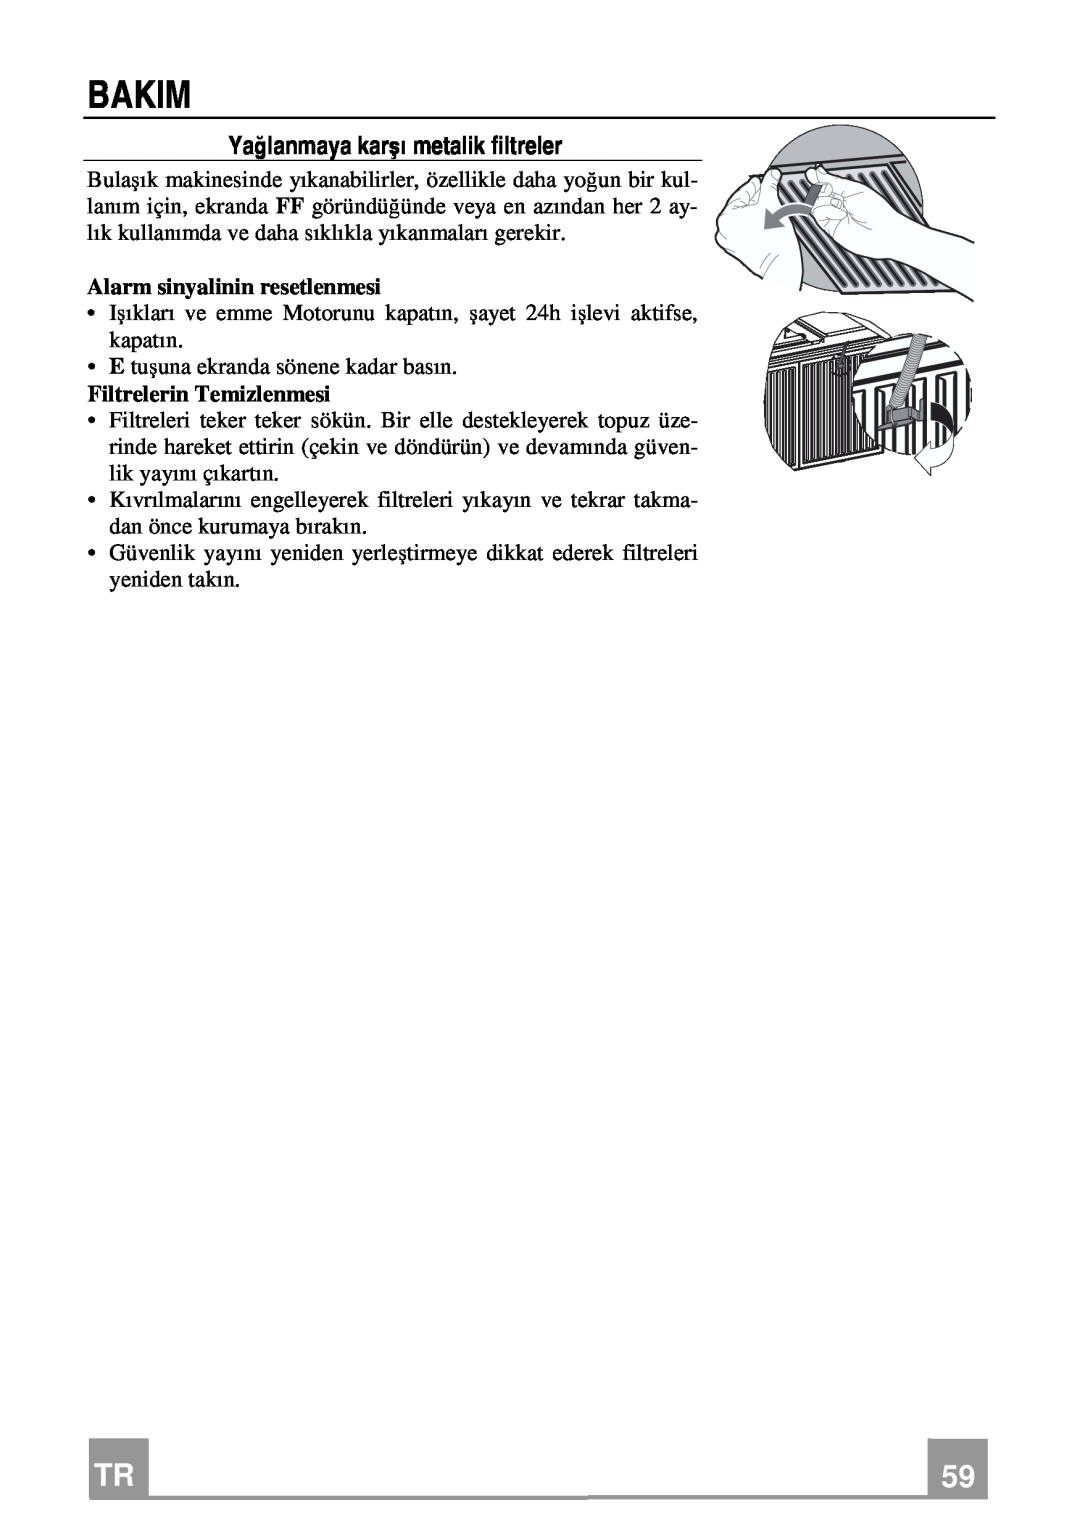 Franke Consumer Products FDMO 607 I manual Bakim, Yağlanmaya karşı metalik filtreler, Alarm sinyalinin resetlenmesi 